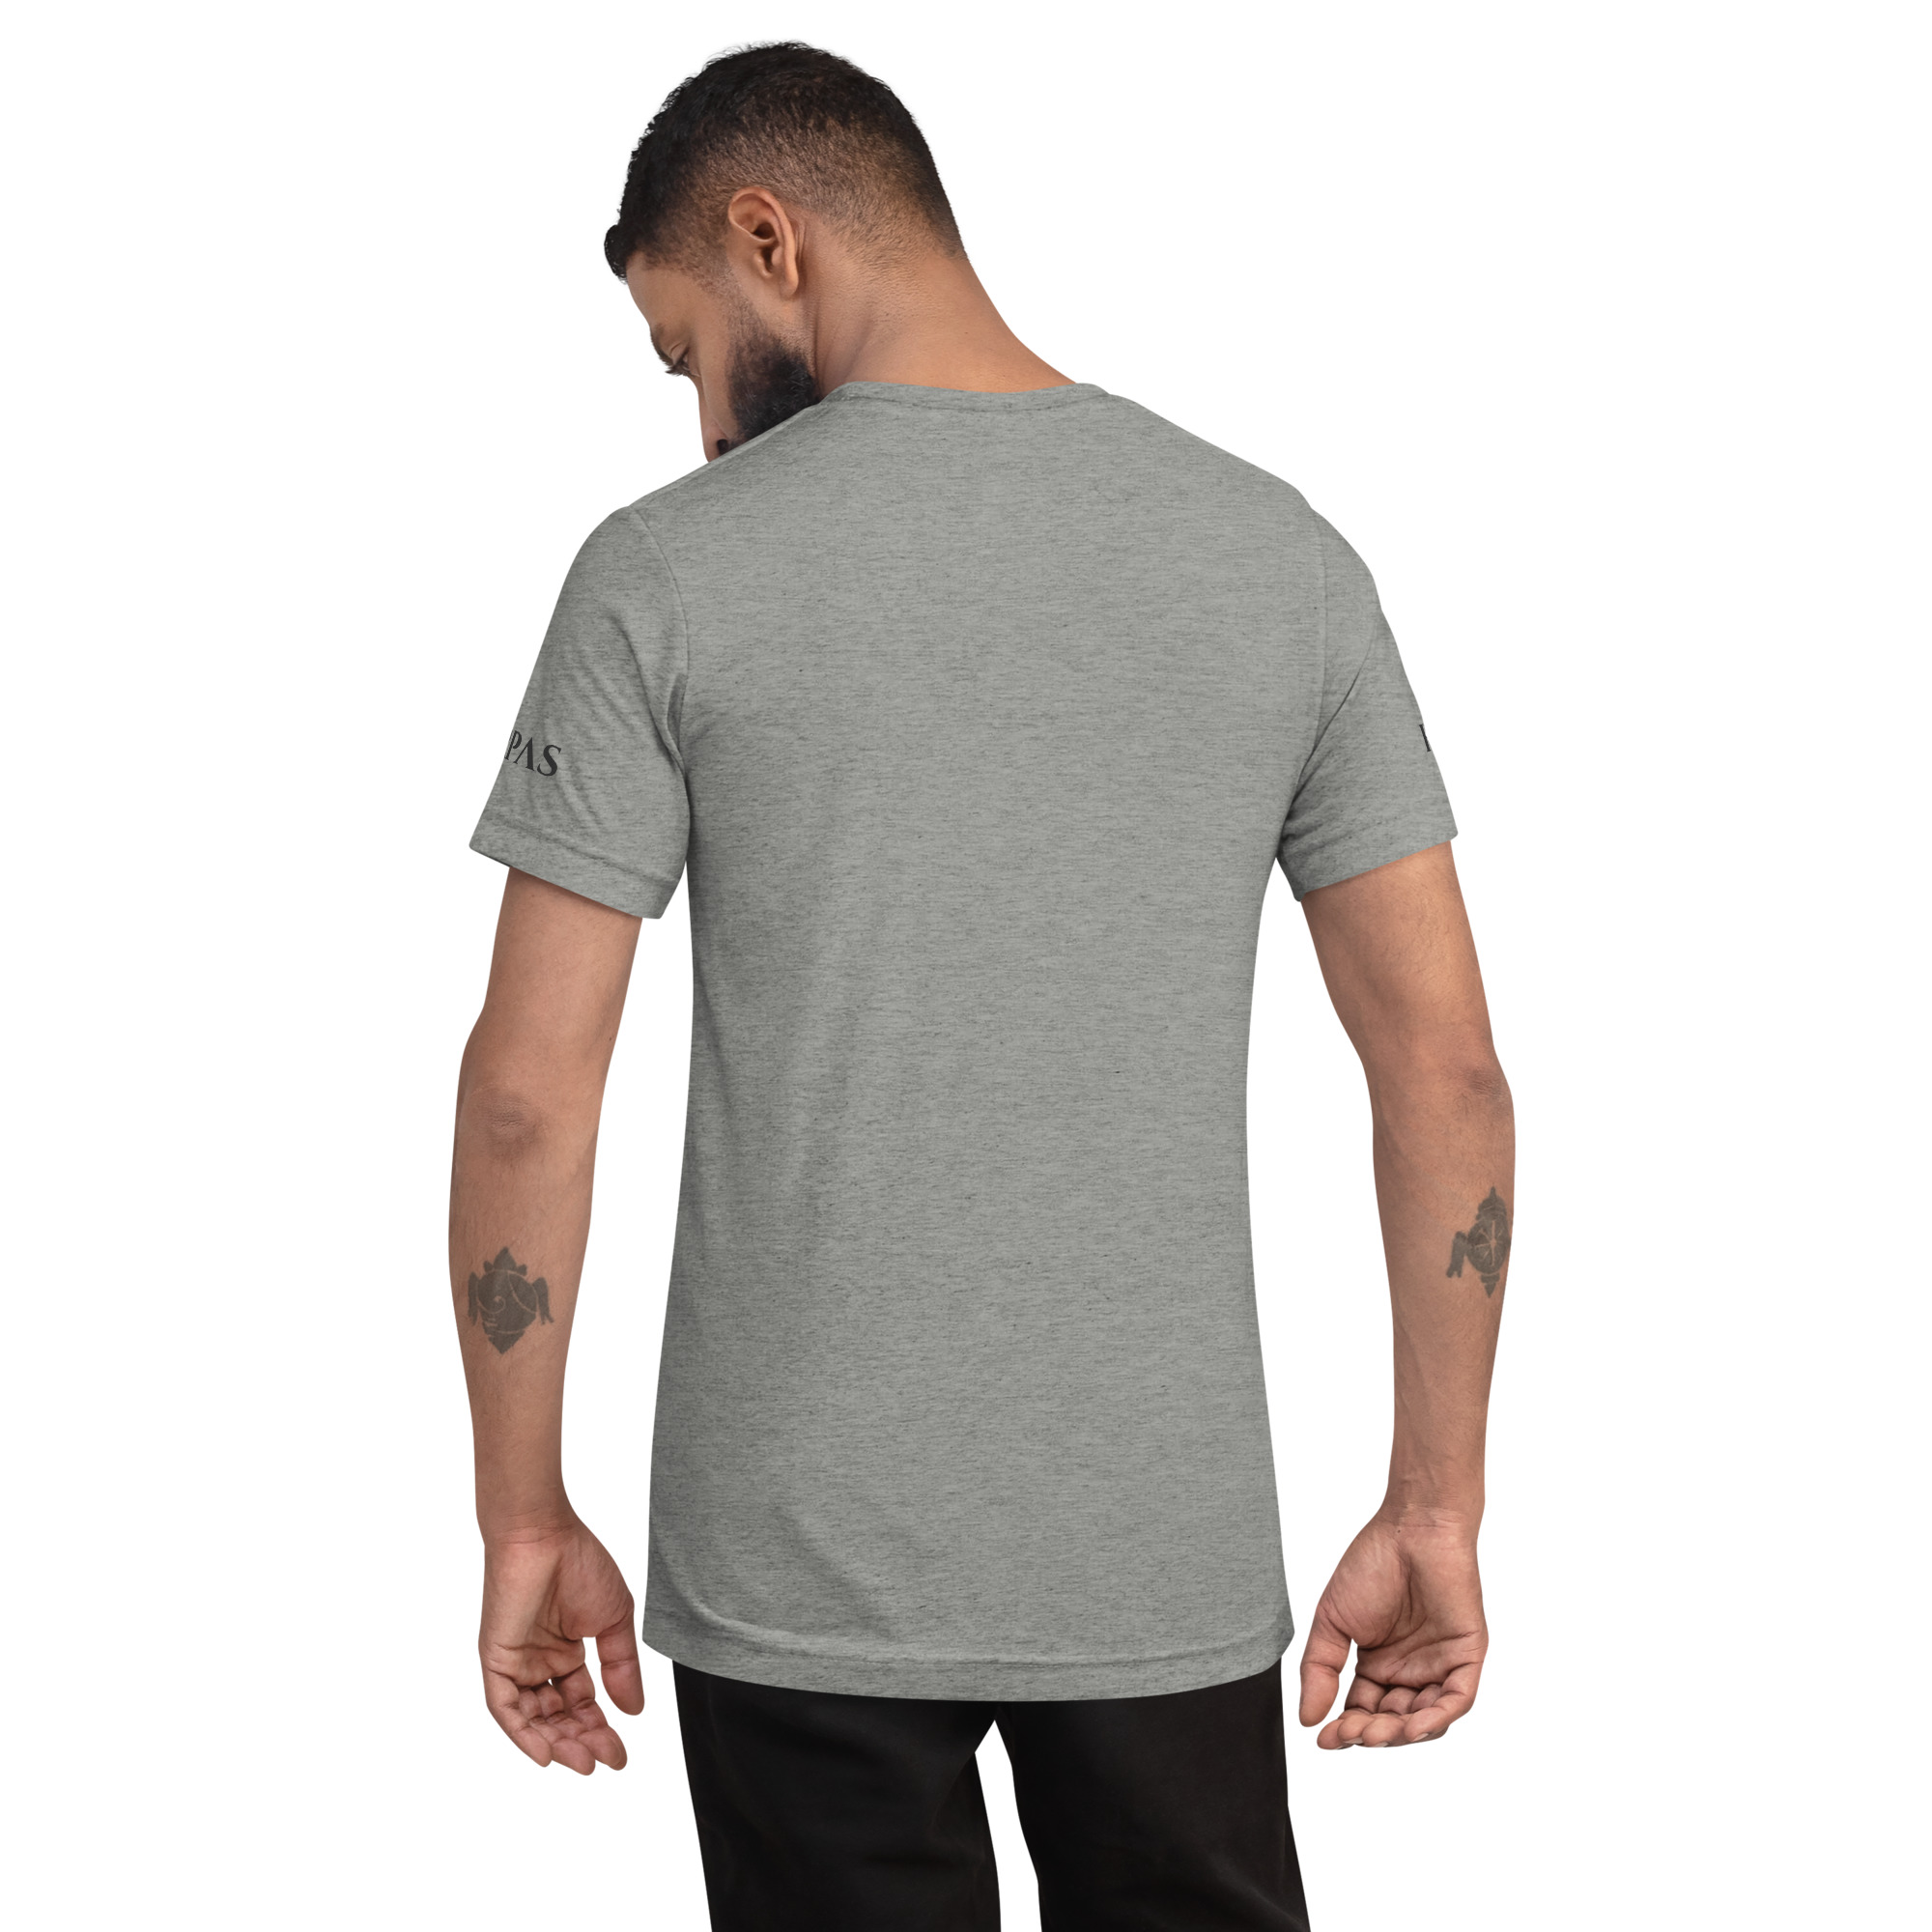 Camiseta tri-blend – Harpas